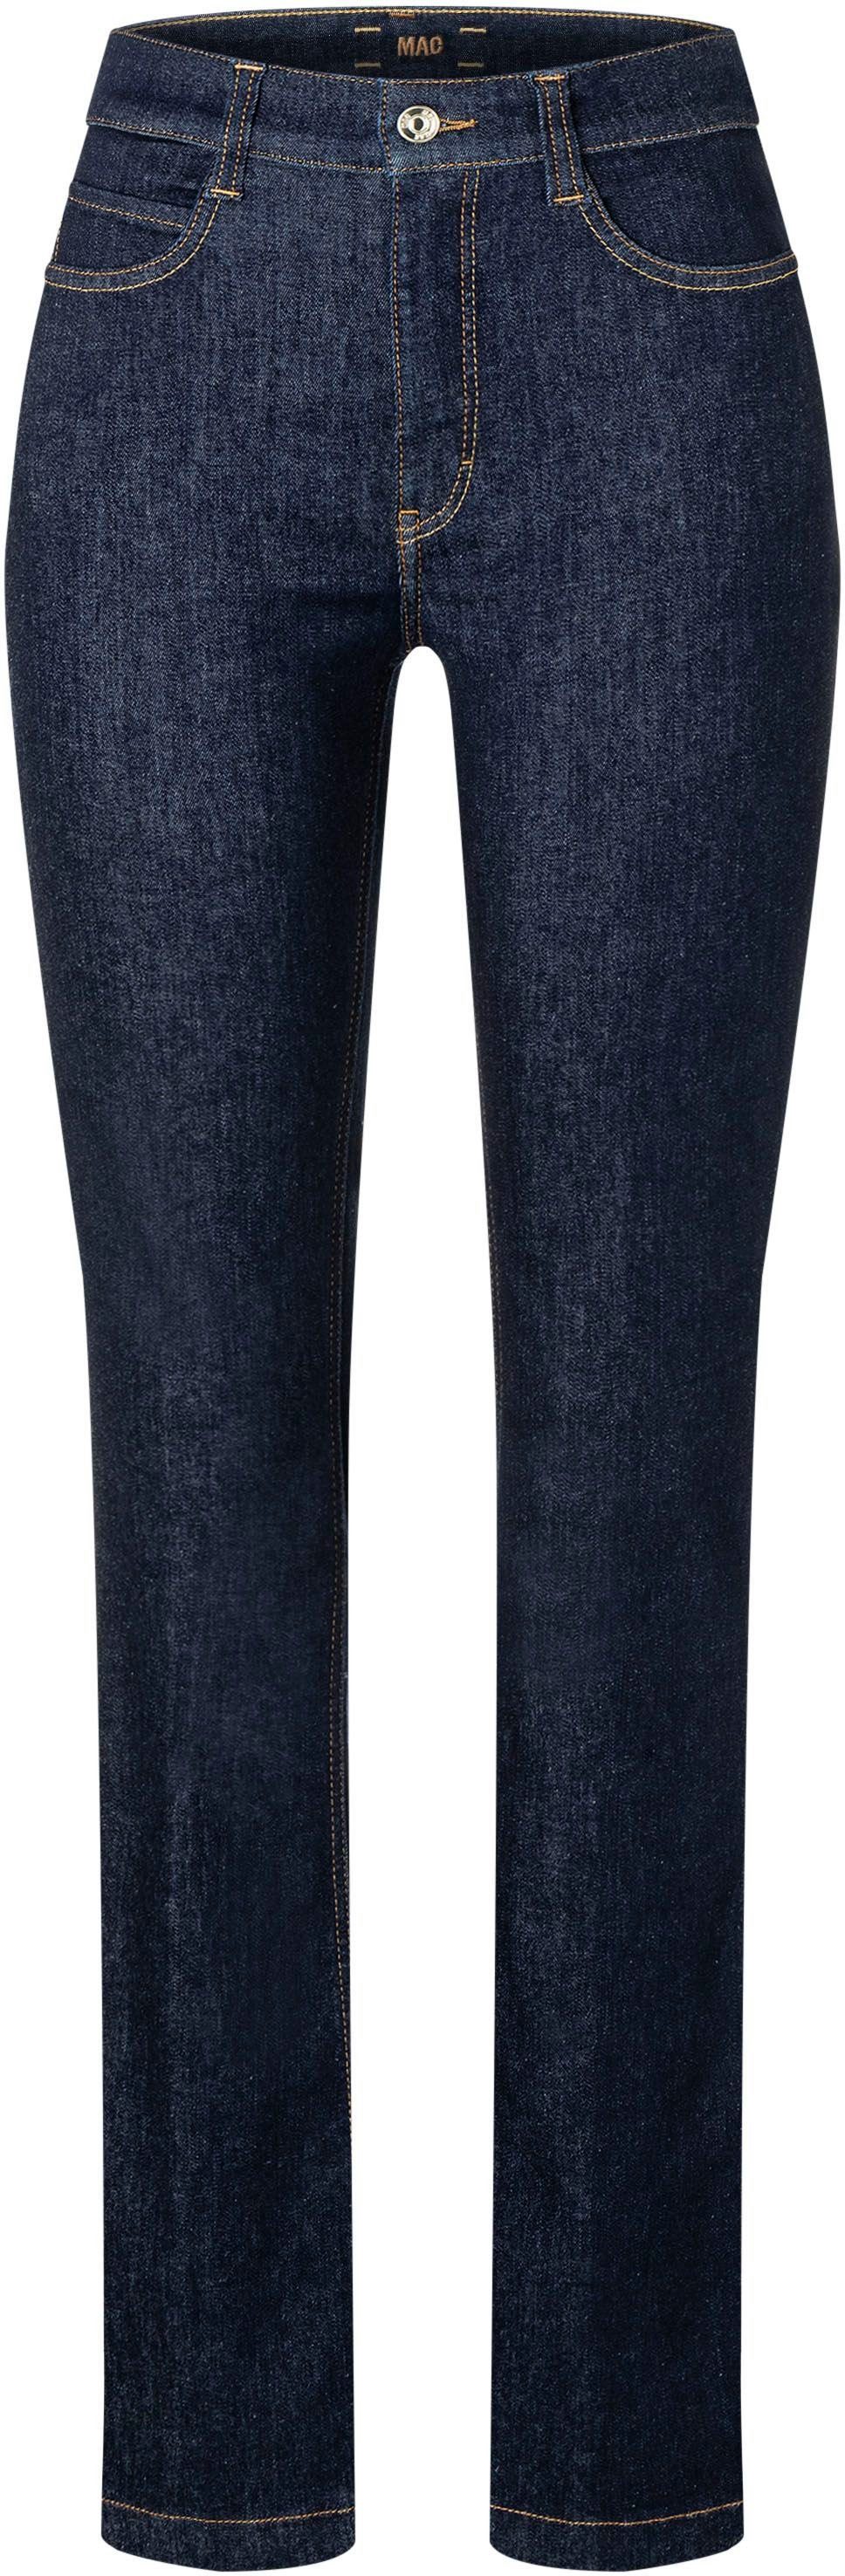 MAC High-waist jeans Boot